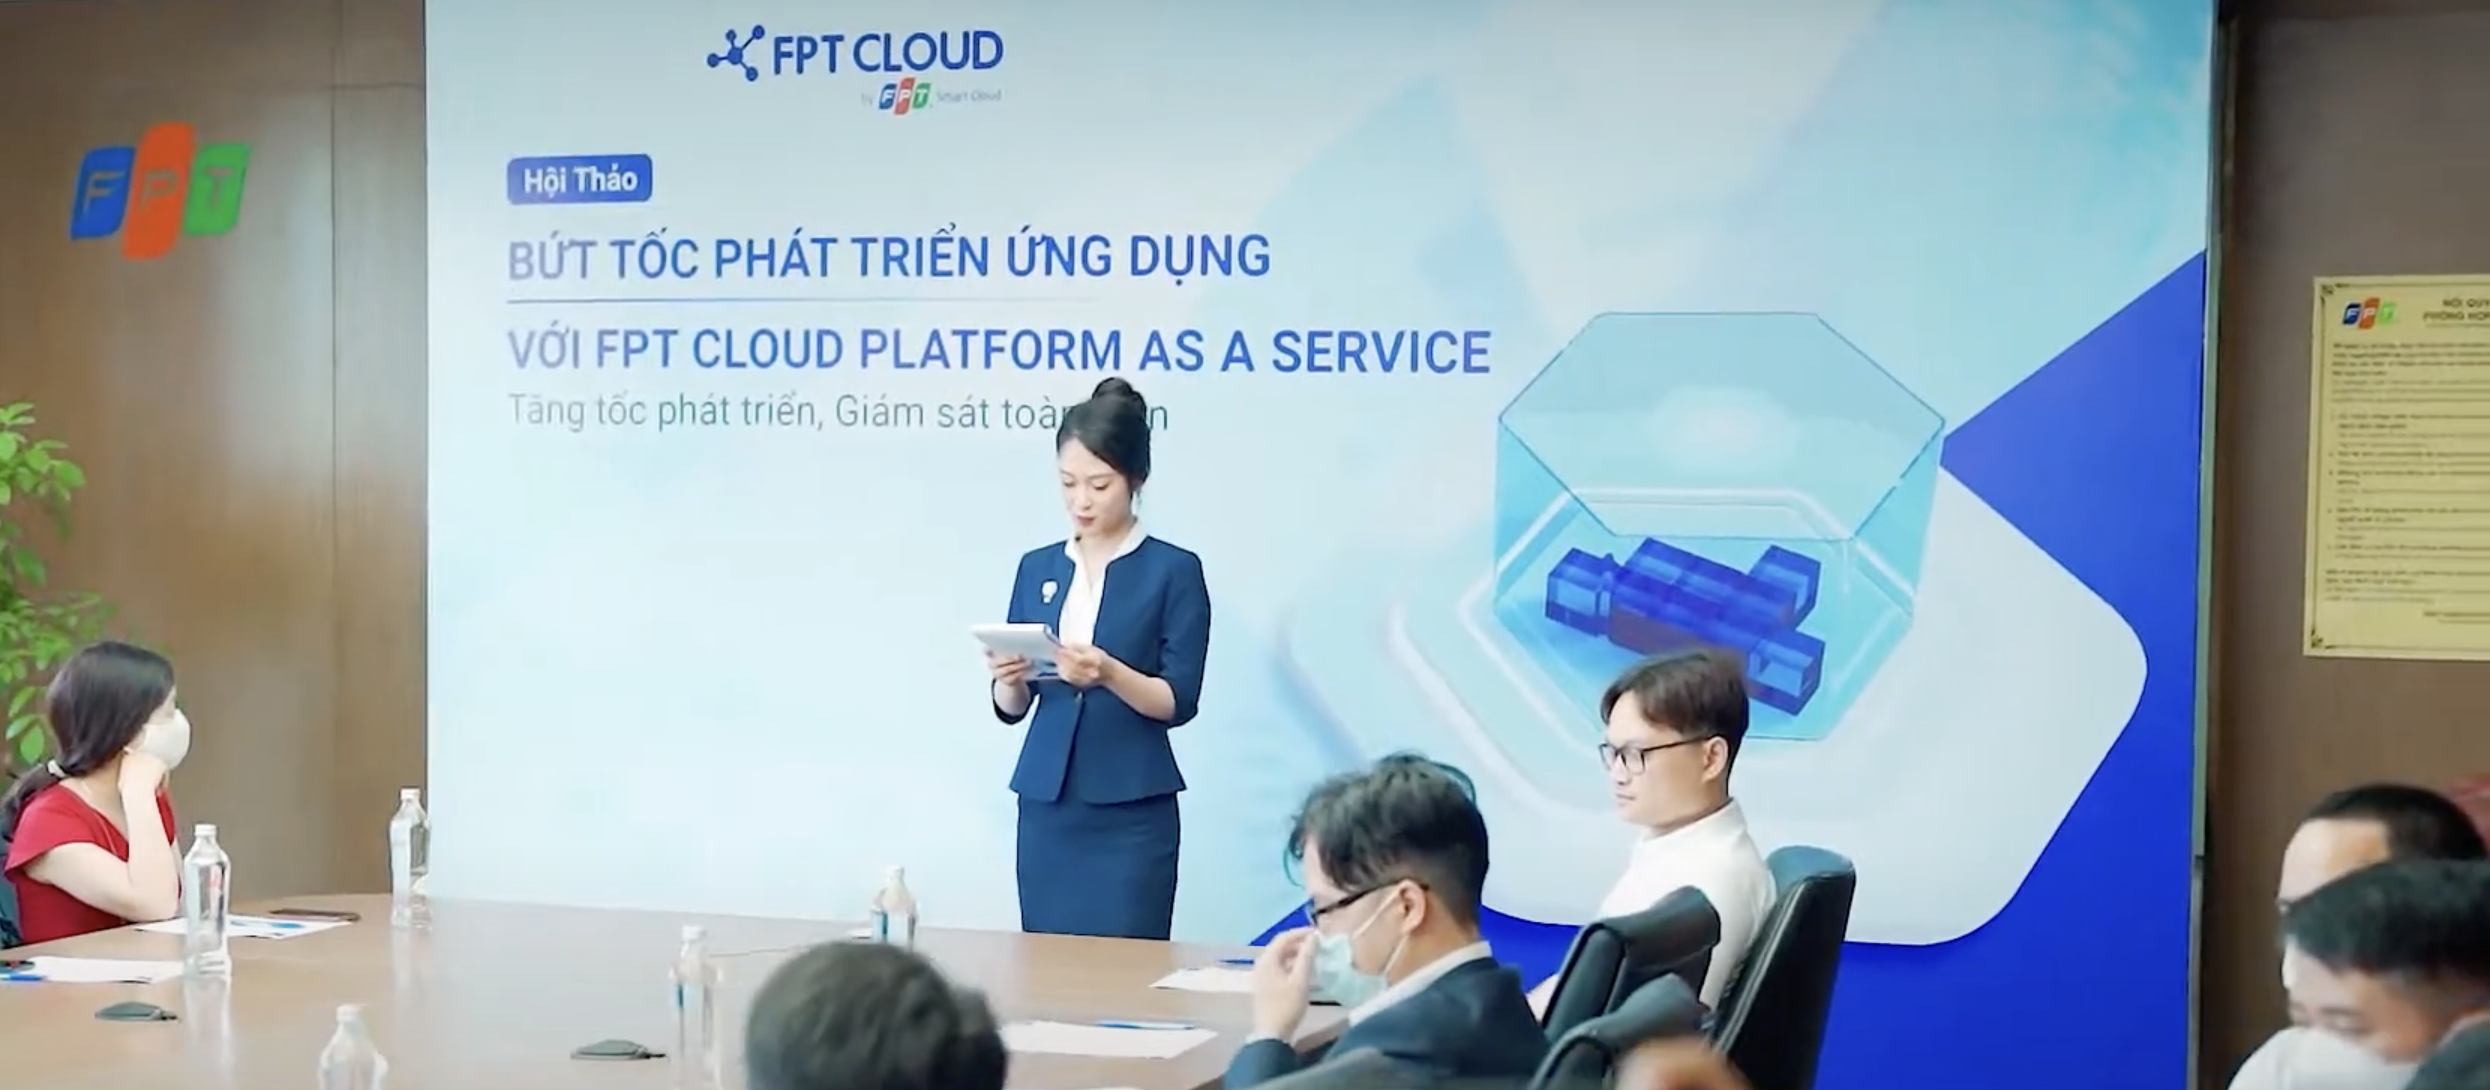 Event Highlights "Bứt tốc phát triển ứng dụng với FPT Cloud Platform As A Service"